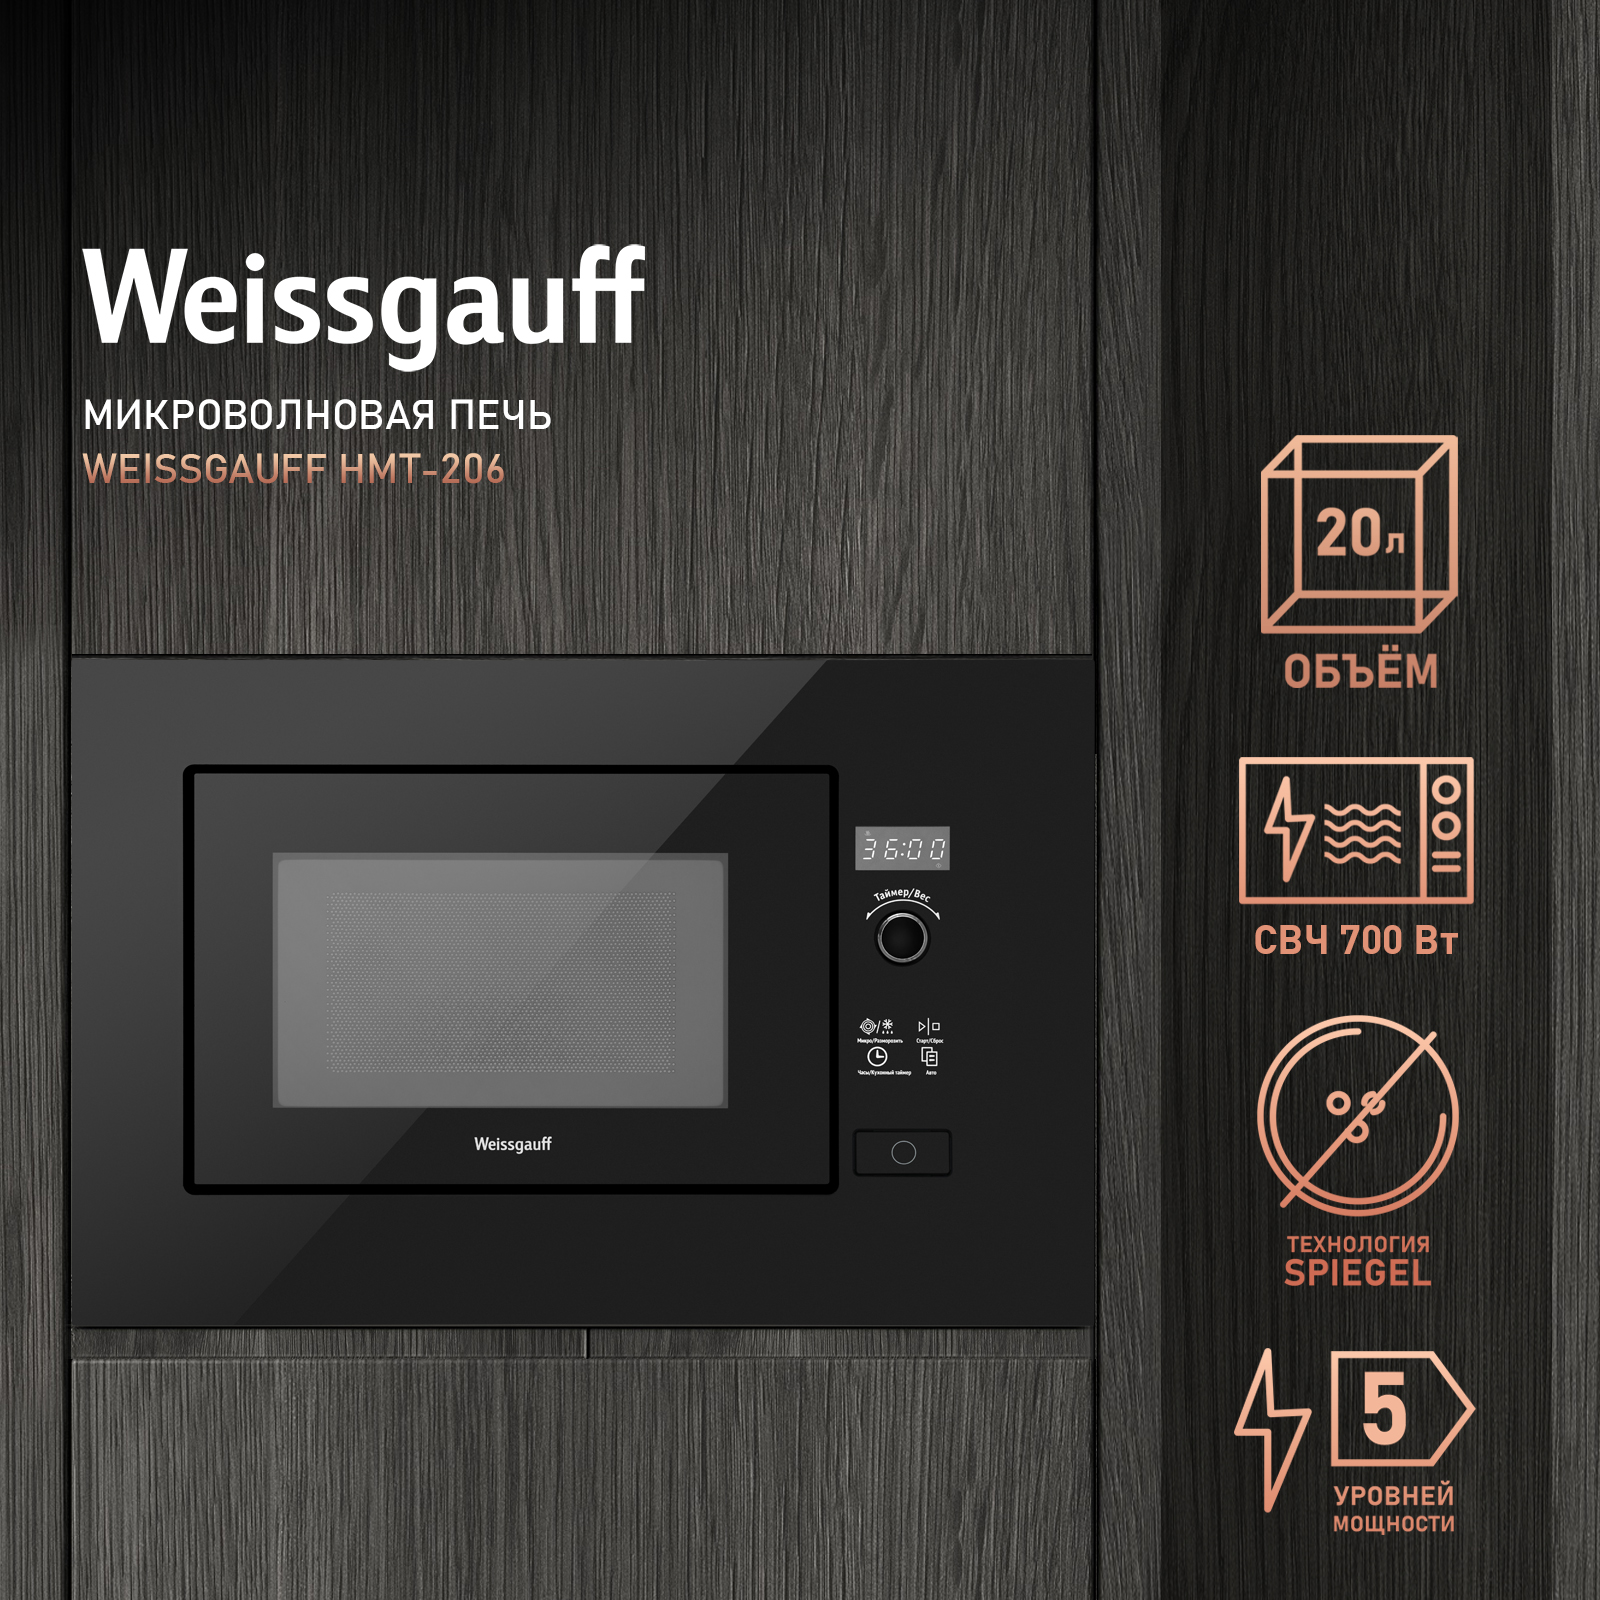 Встраиваемая микроволновая печь Weissgauff HMT-206 Black встраиваемая микроволновая печь weissgauff hmt 206 black